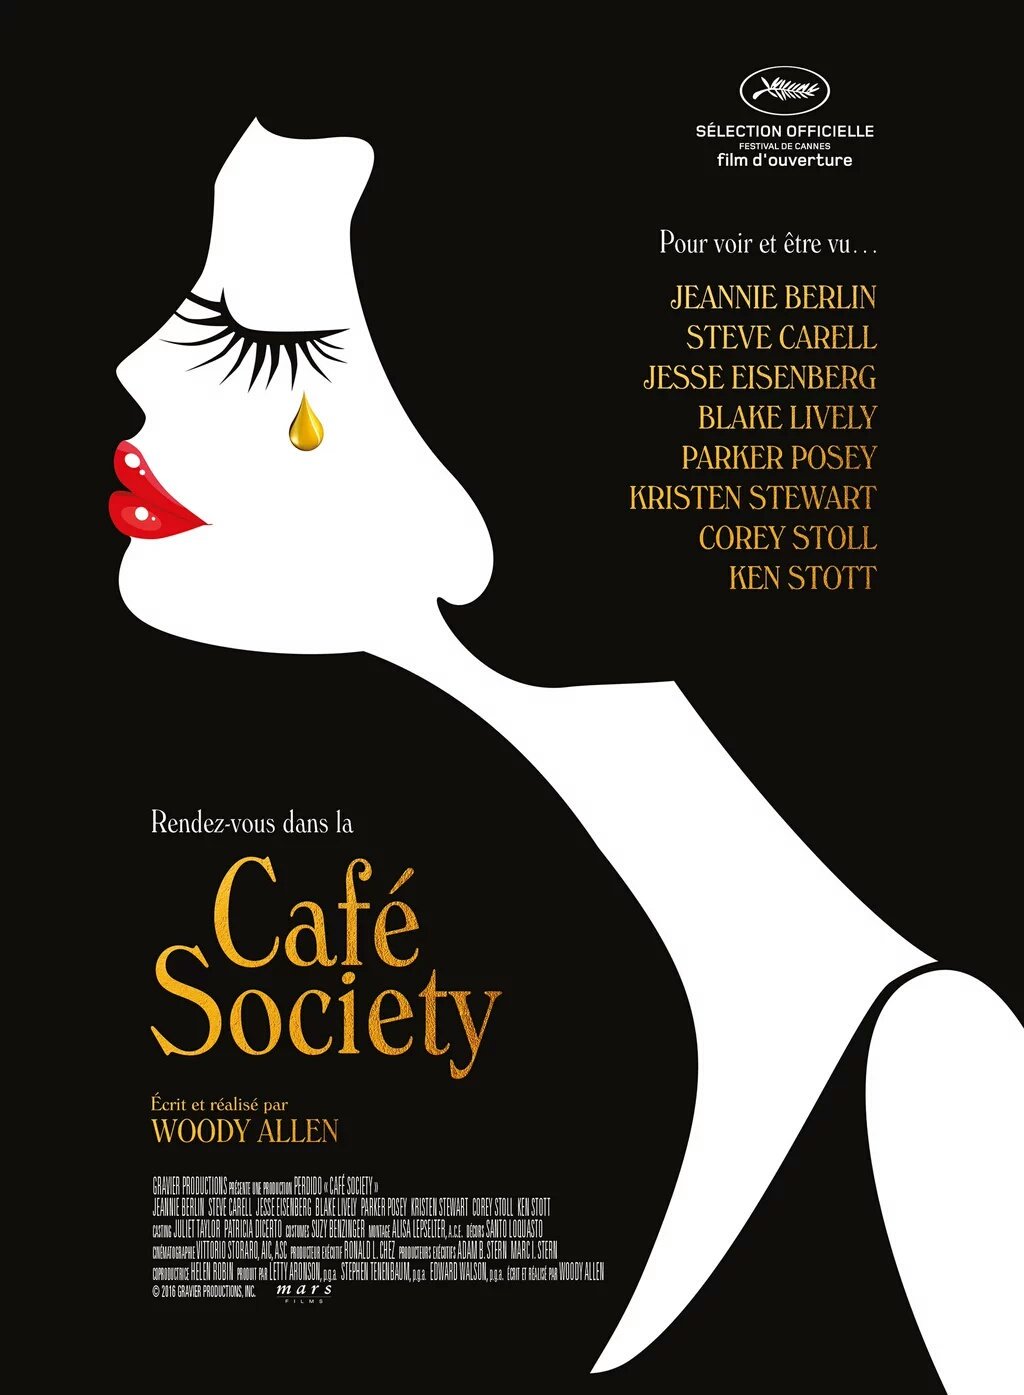 Café Society : Woody Allen est-il un genre ?